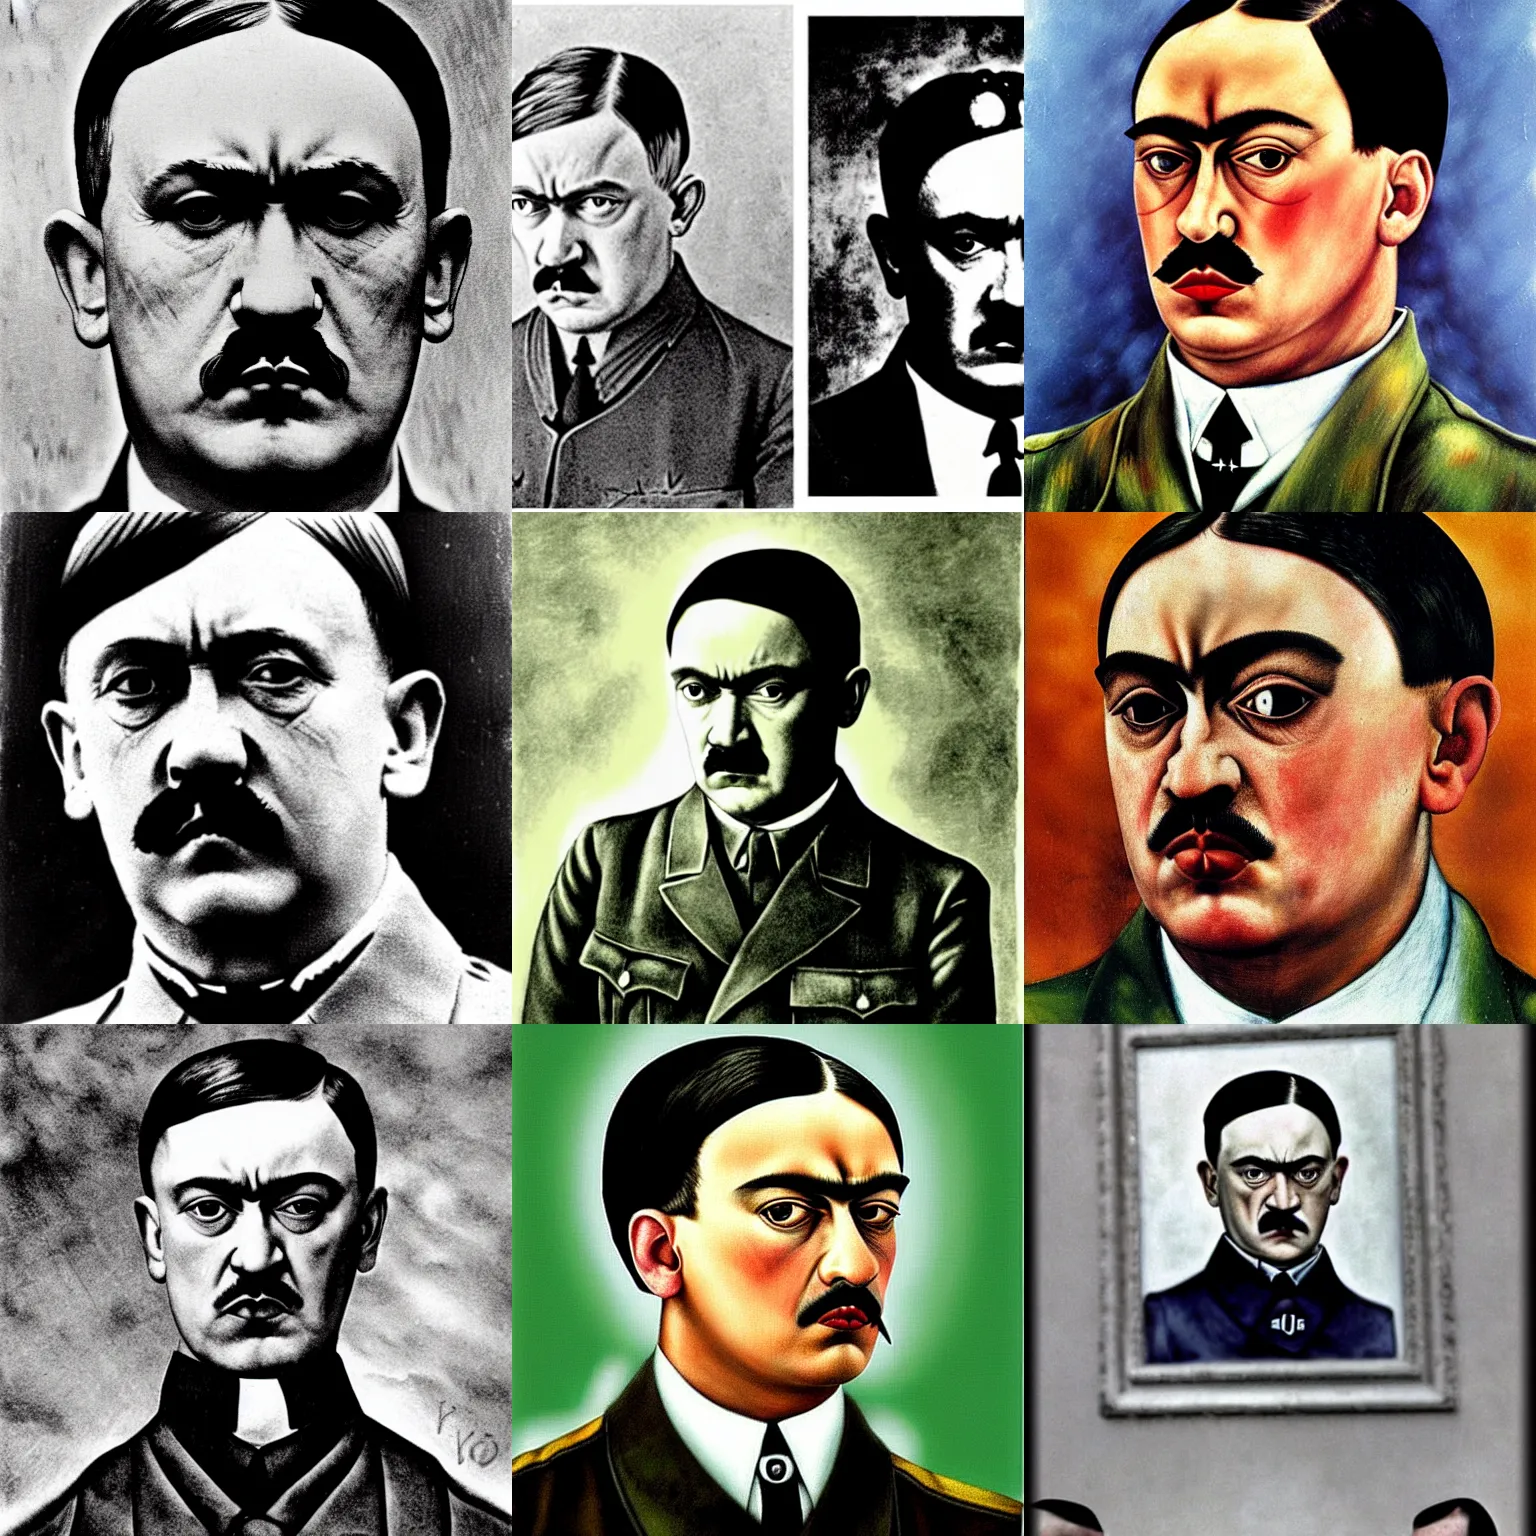 Prompt: adolf Hitler by frida kahlo